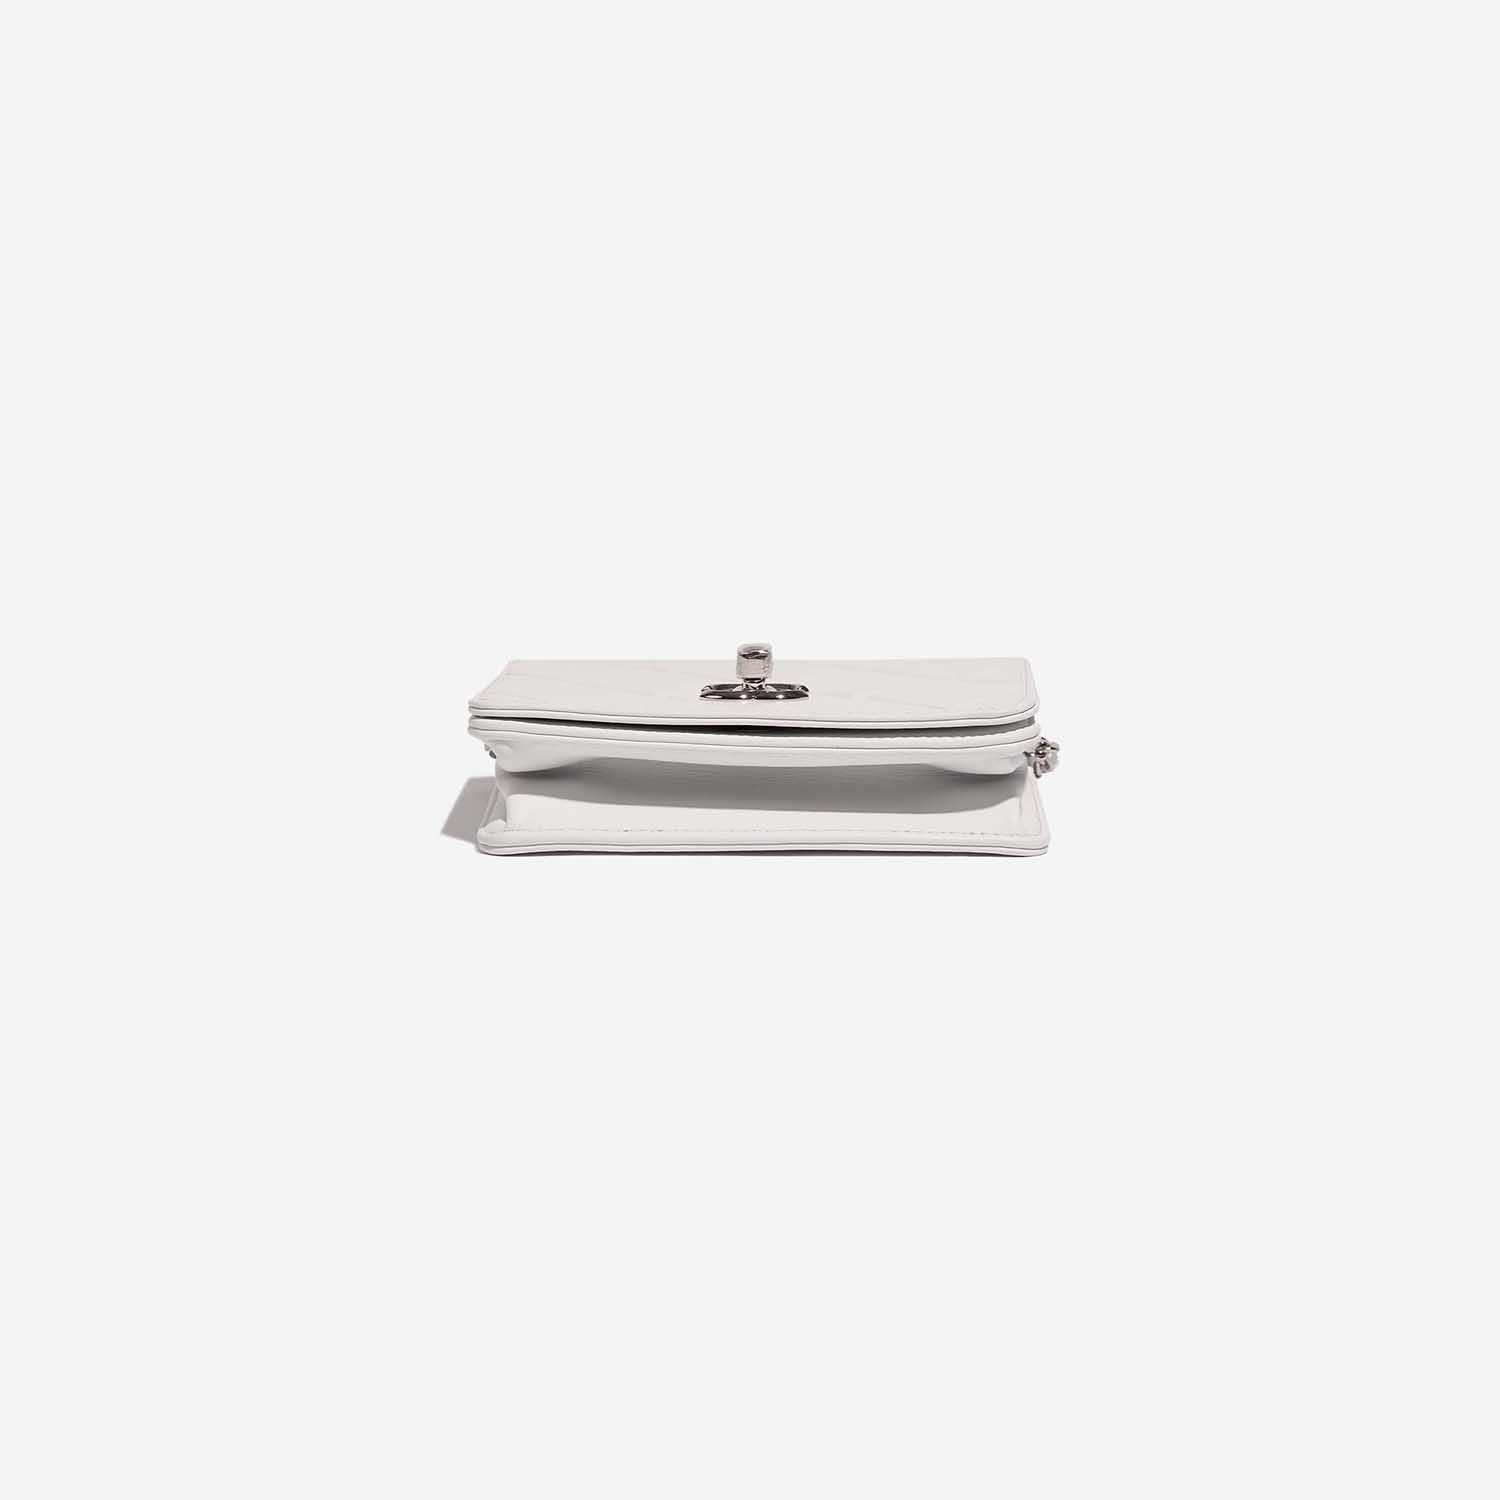 Chanel Timeless MiniFlap White Bottom | Verkaufen Sie Ihre Designer-Tasche auf Saclab.com